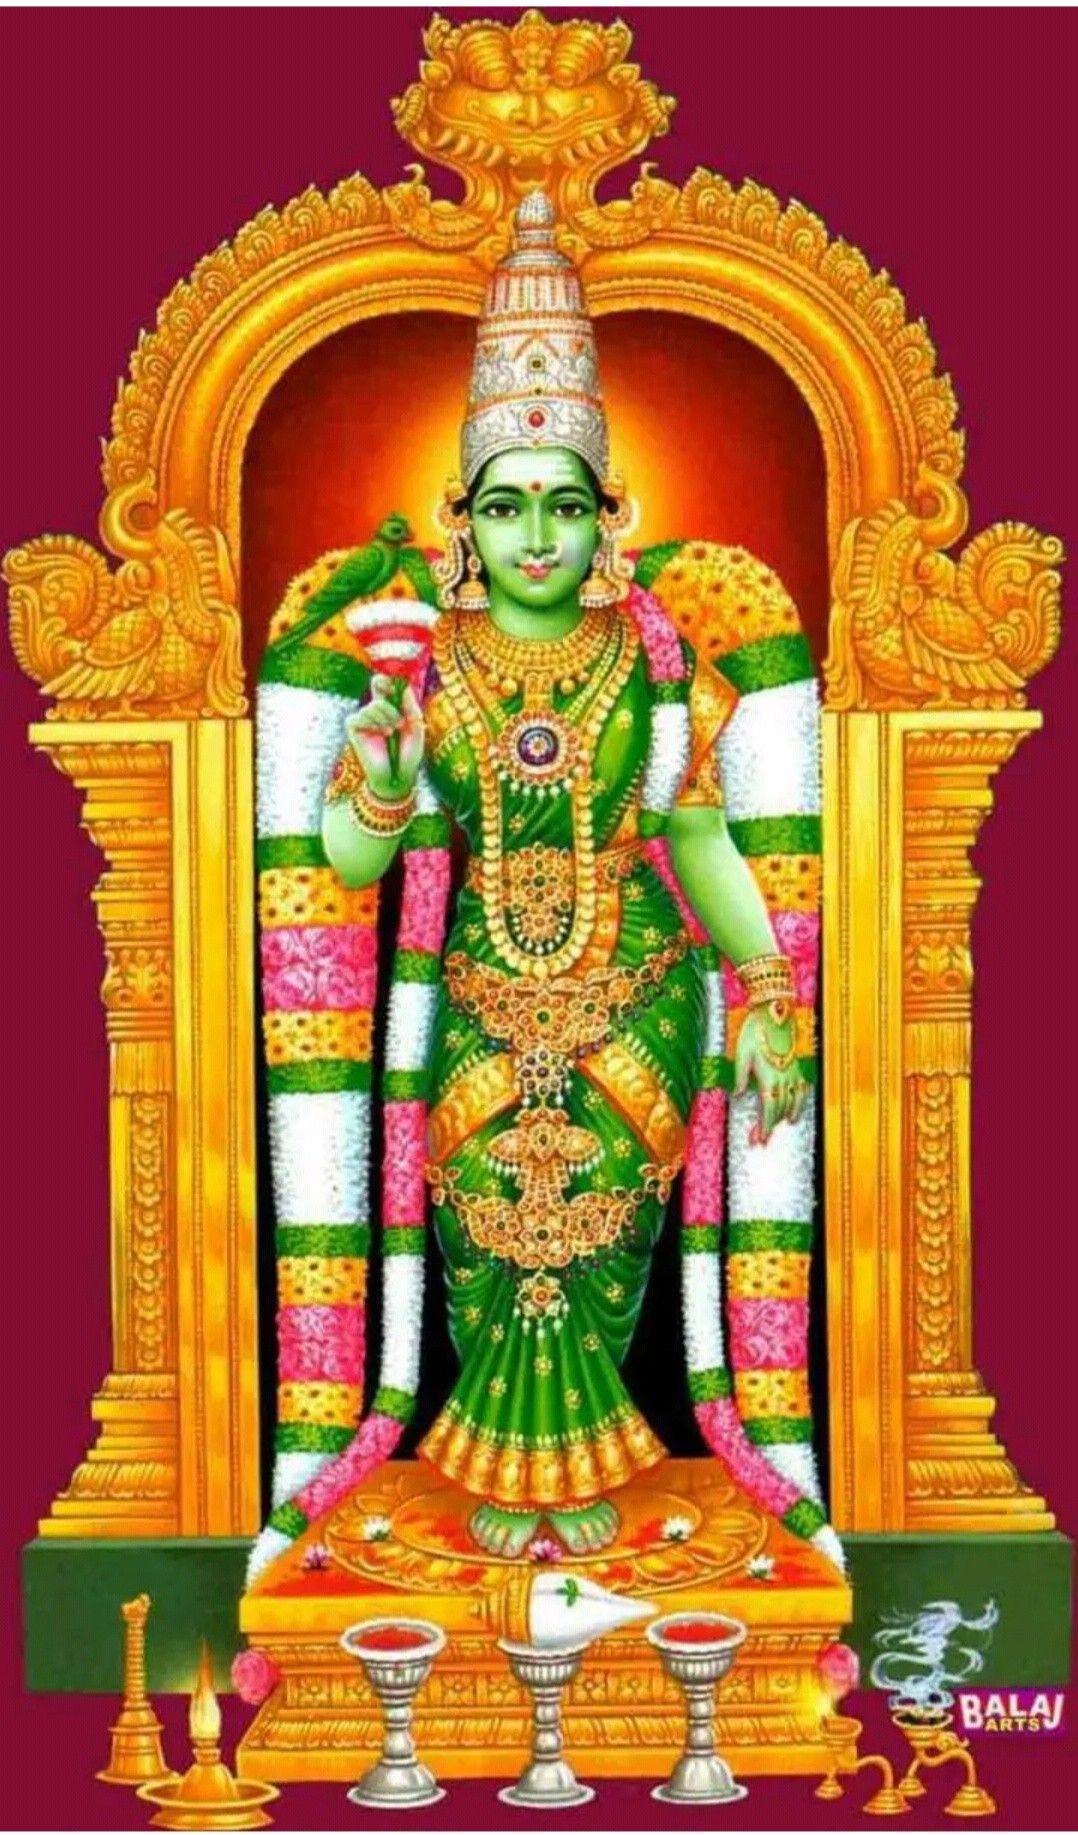 Thrienadh Arava on v1 Hindu deities Deities Madurai